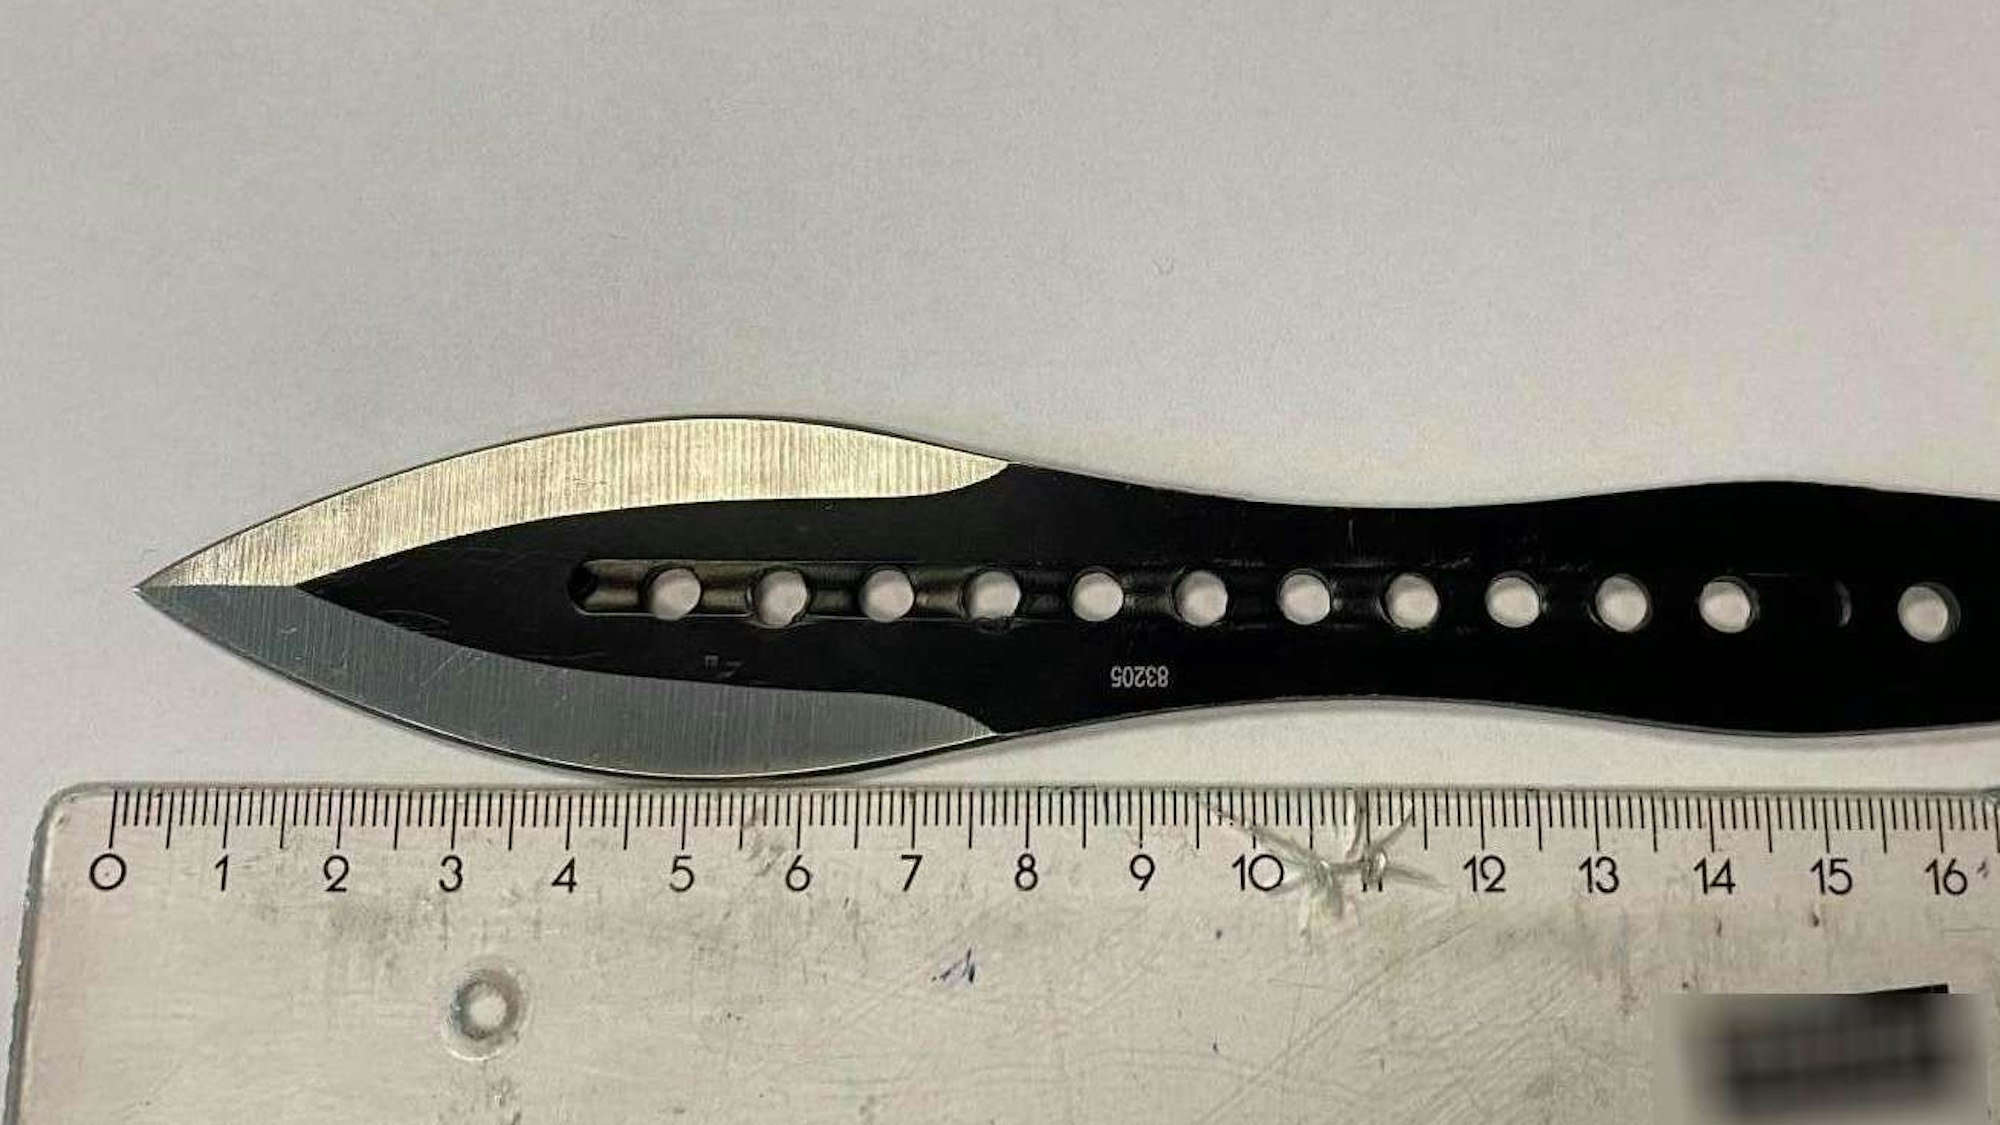 Das schwarze Wurfmesser liegt neben einem Lineal und hat eine knapp acht Zentimeter lange Klinge.